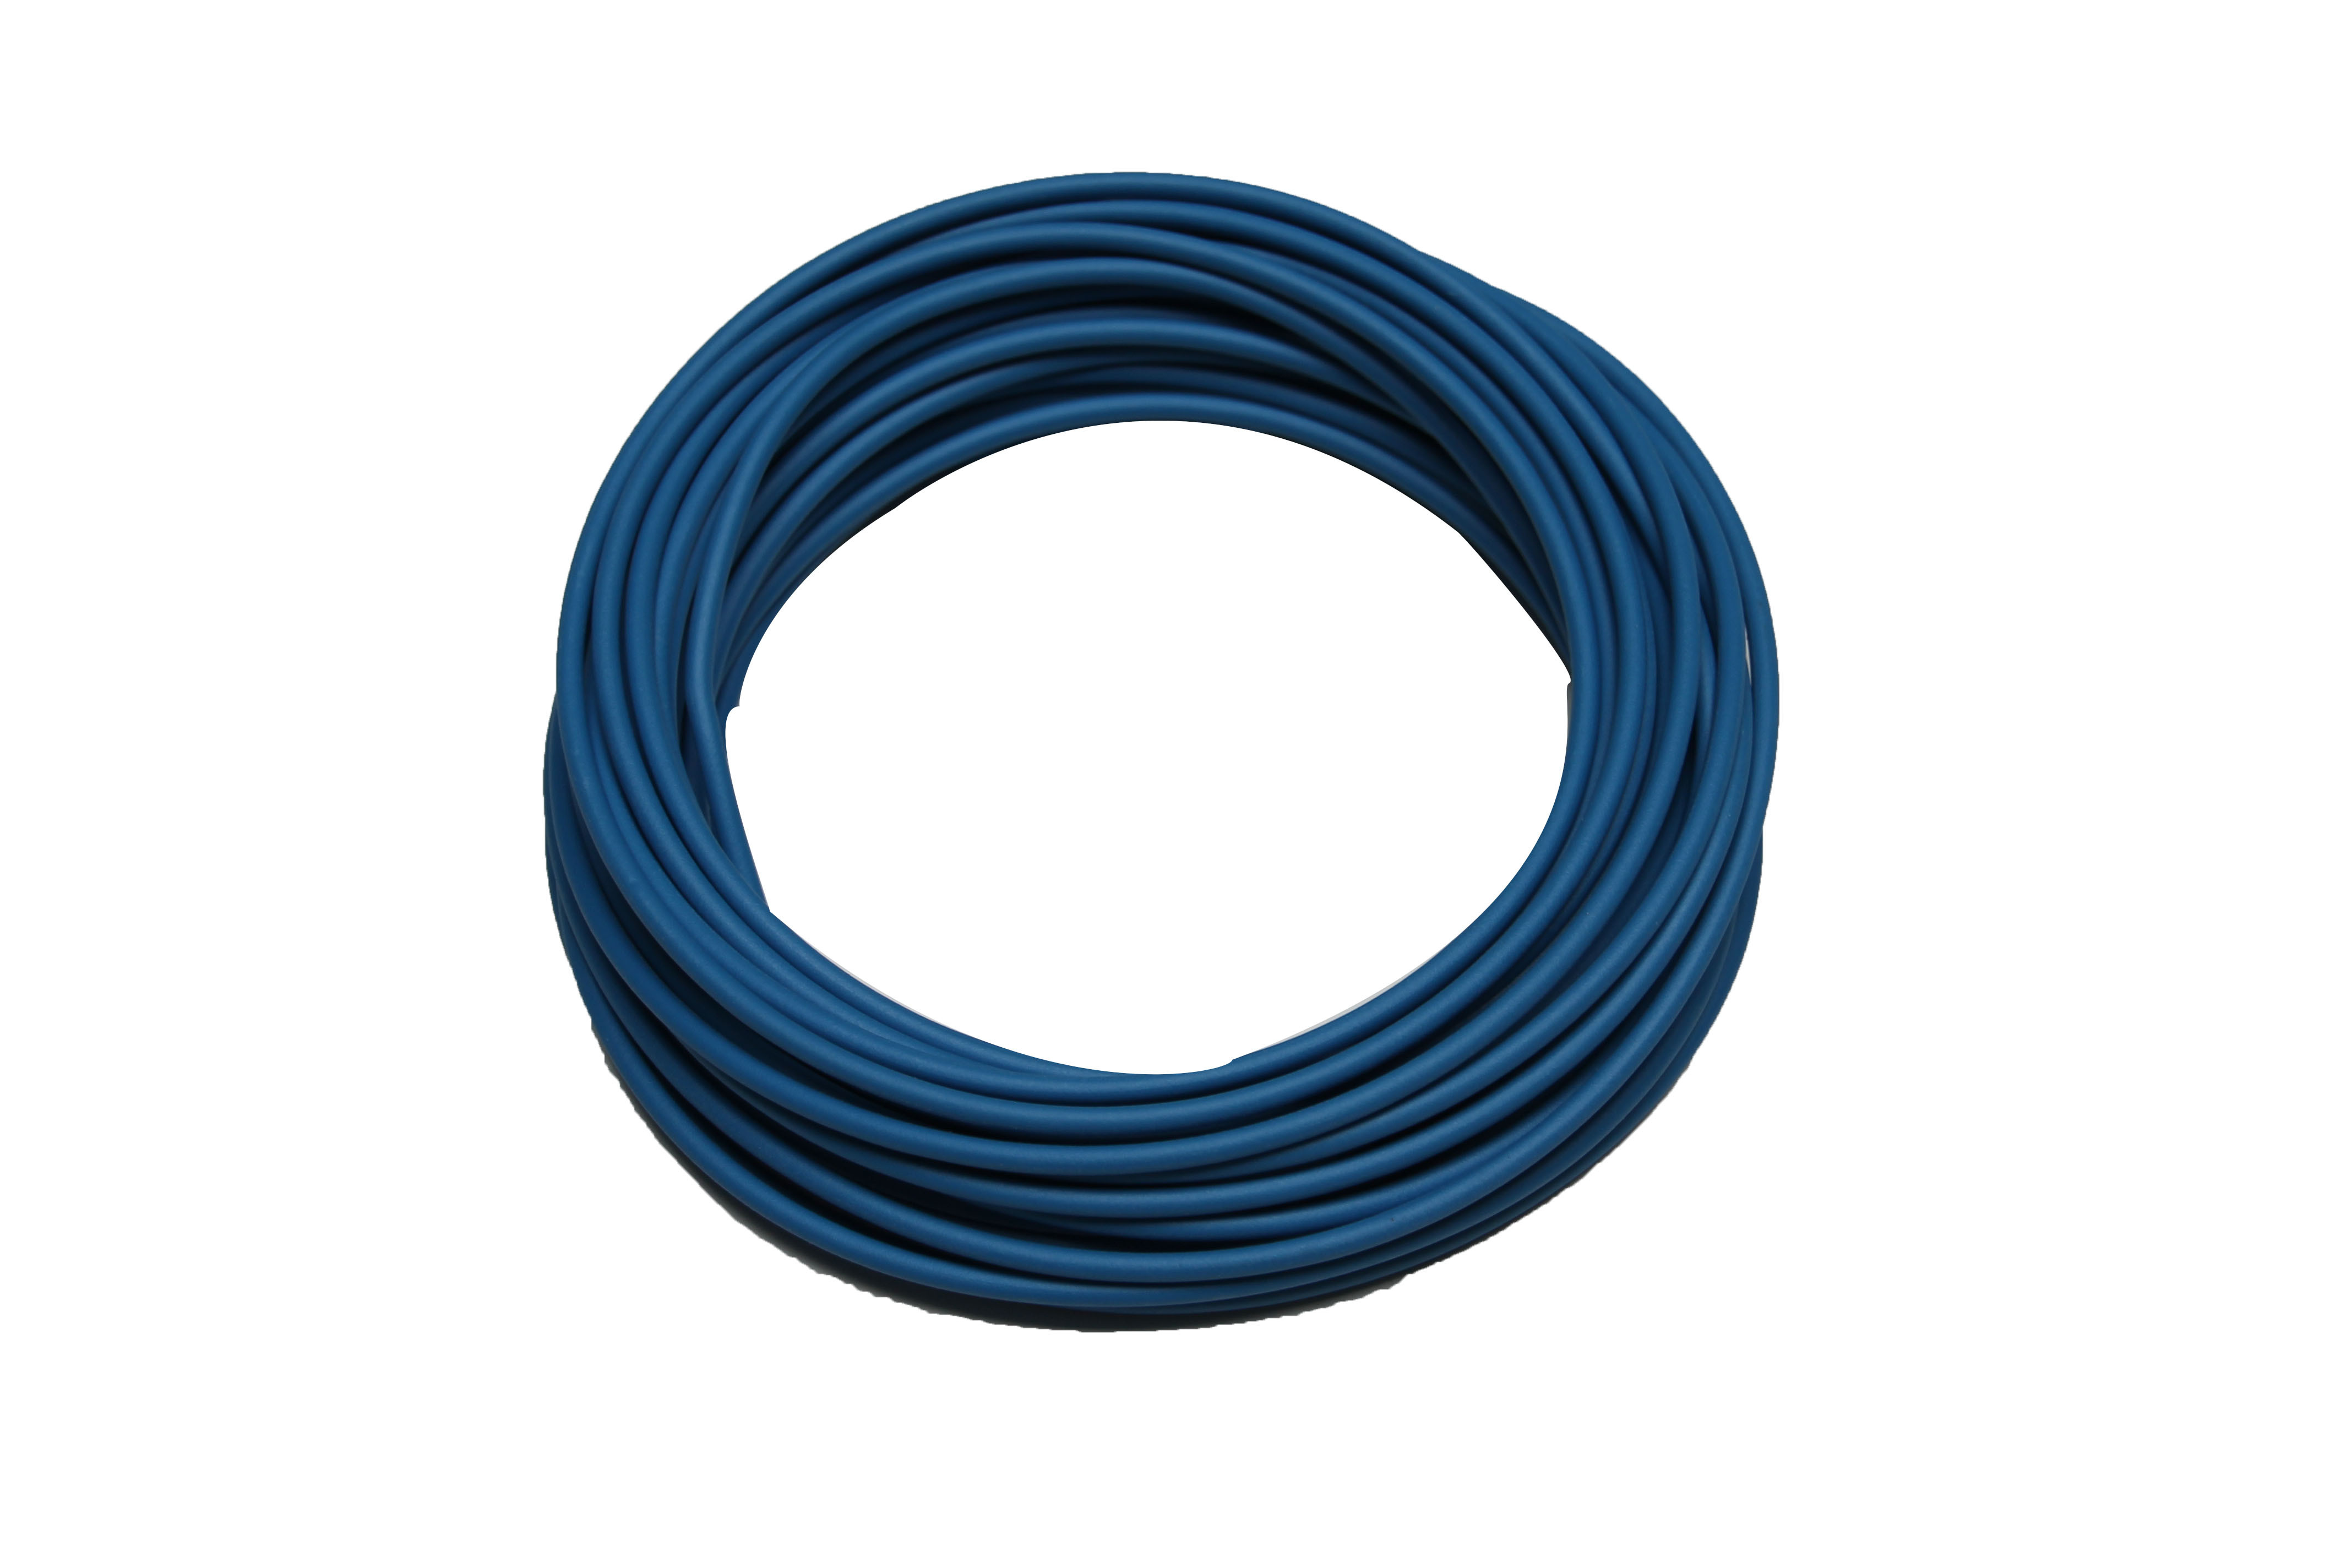 Draad - 1.5mm² - 10m - zakje - blauw